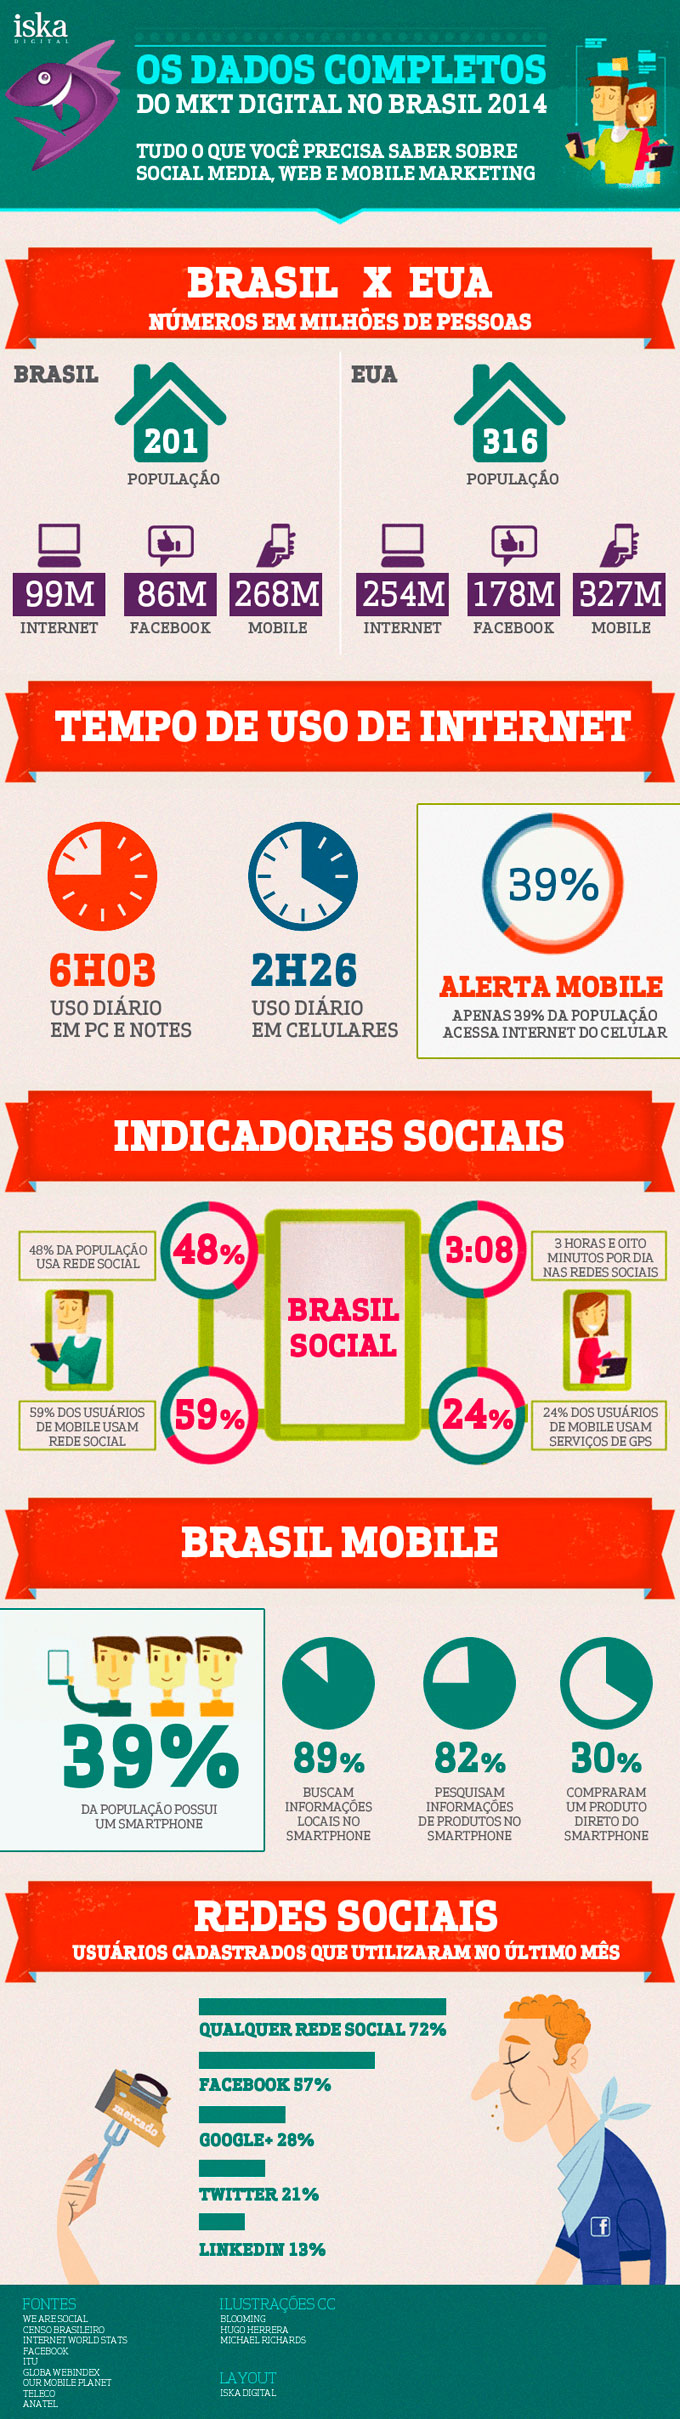 infografico-marketing-digital-no-brasil